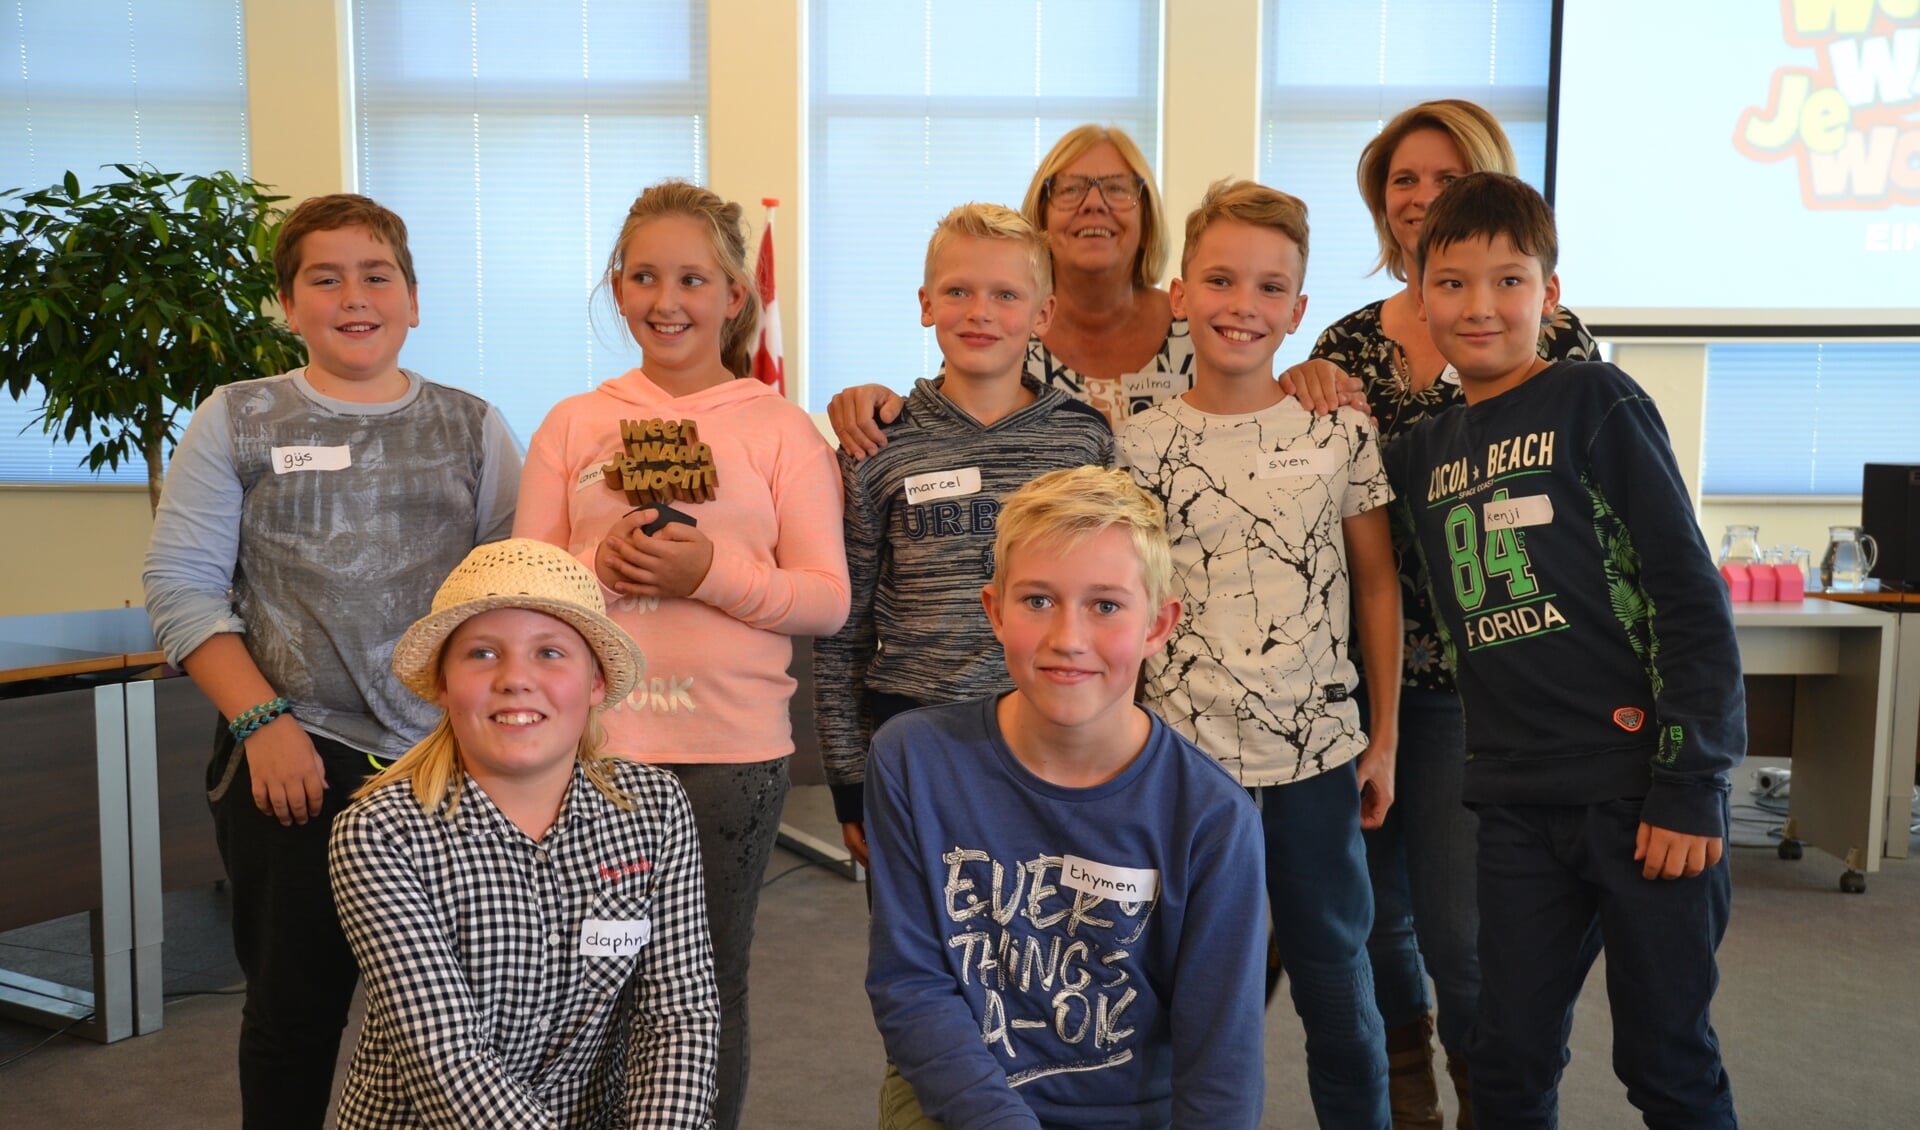 De kinderen van basisschool Merijntje namen de wisselbokaal in ontvangst